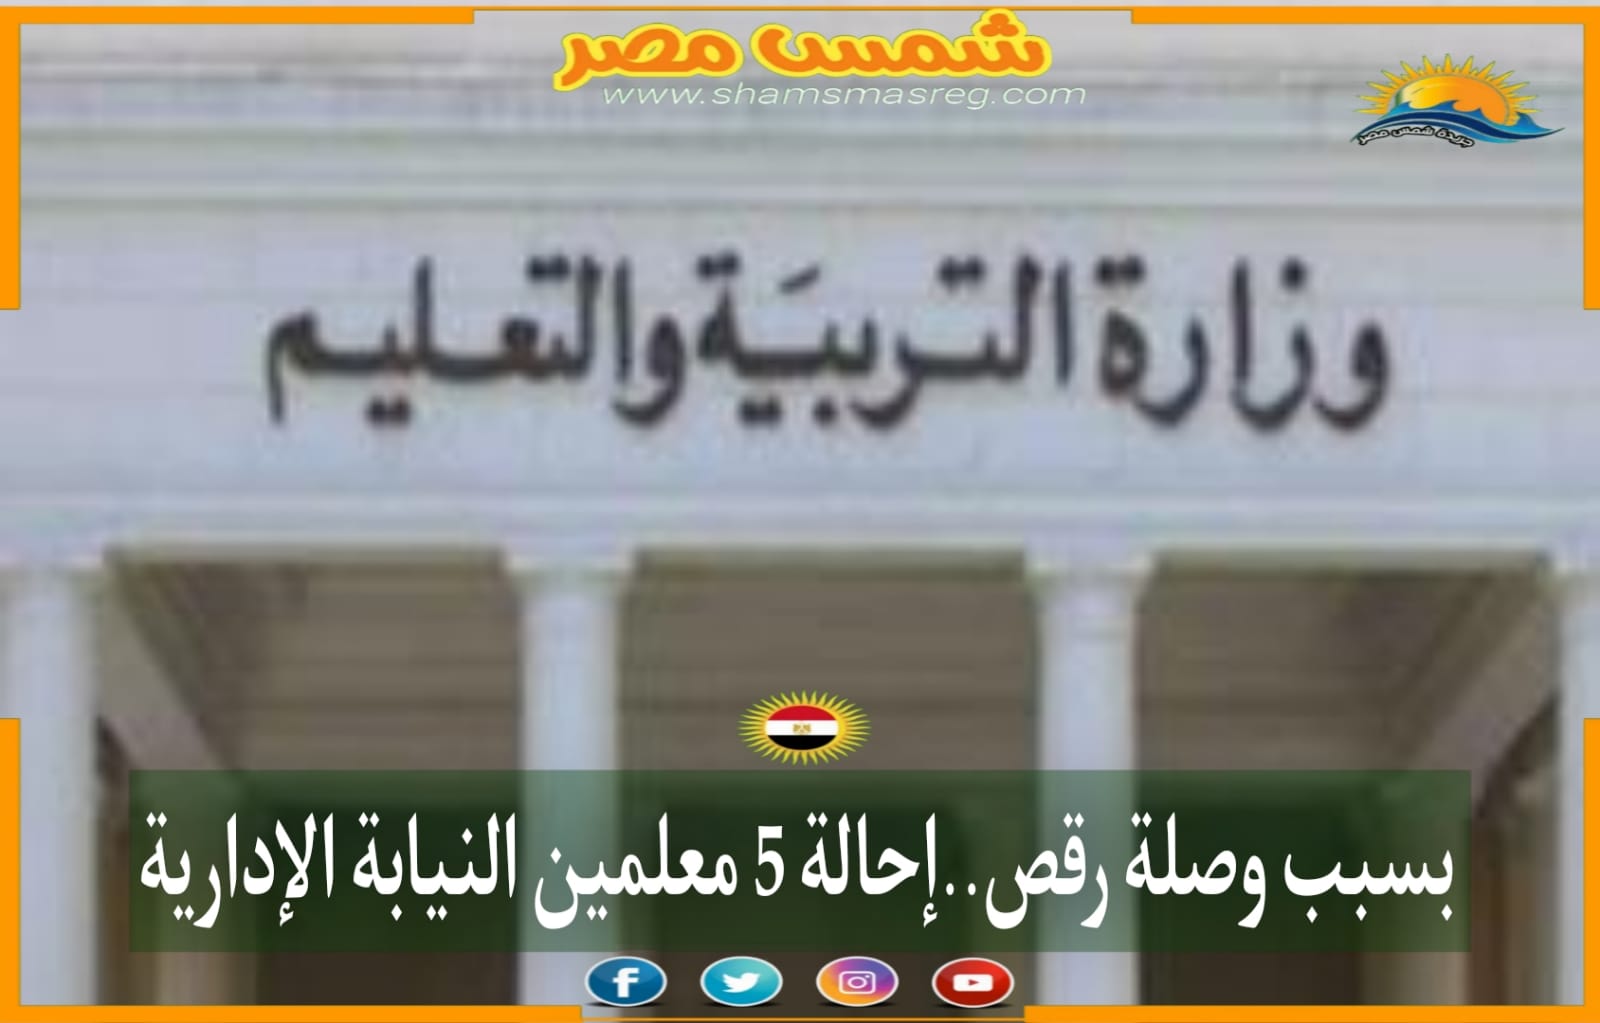 |شمس مصر|.. بسبب وصلة رقص.. إحالة 5 معلمين للنيابة الإدارية